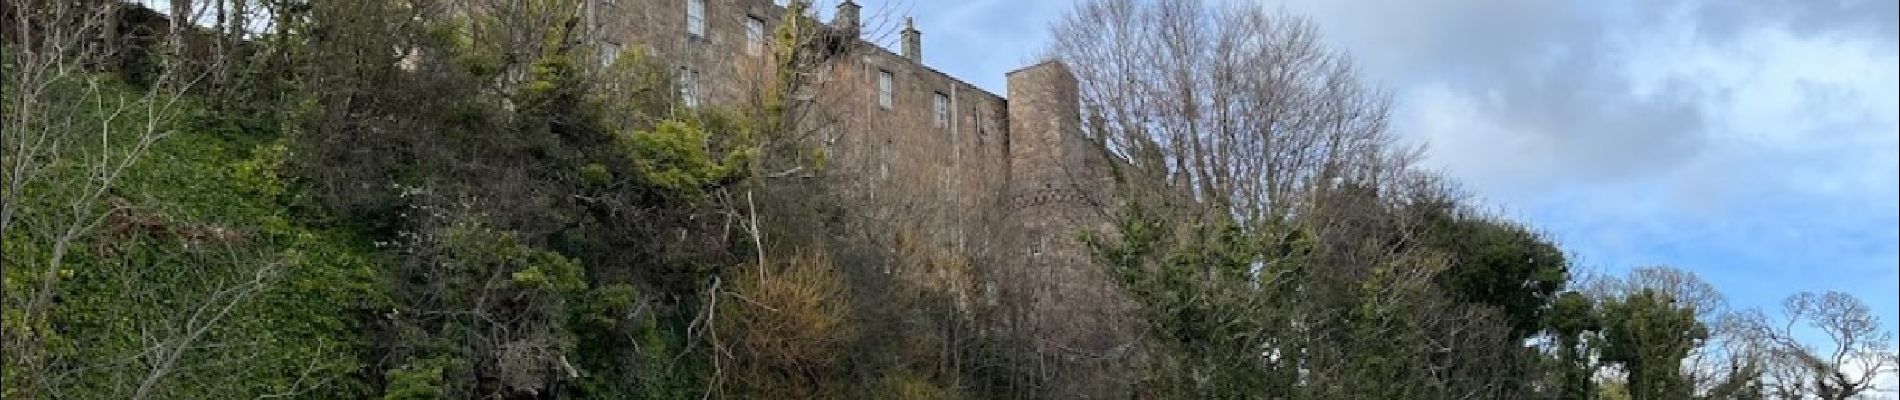 Point of interest Unknown - Wemyss Castle - Photo